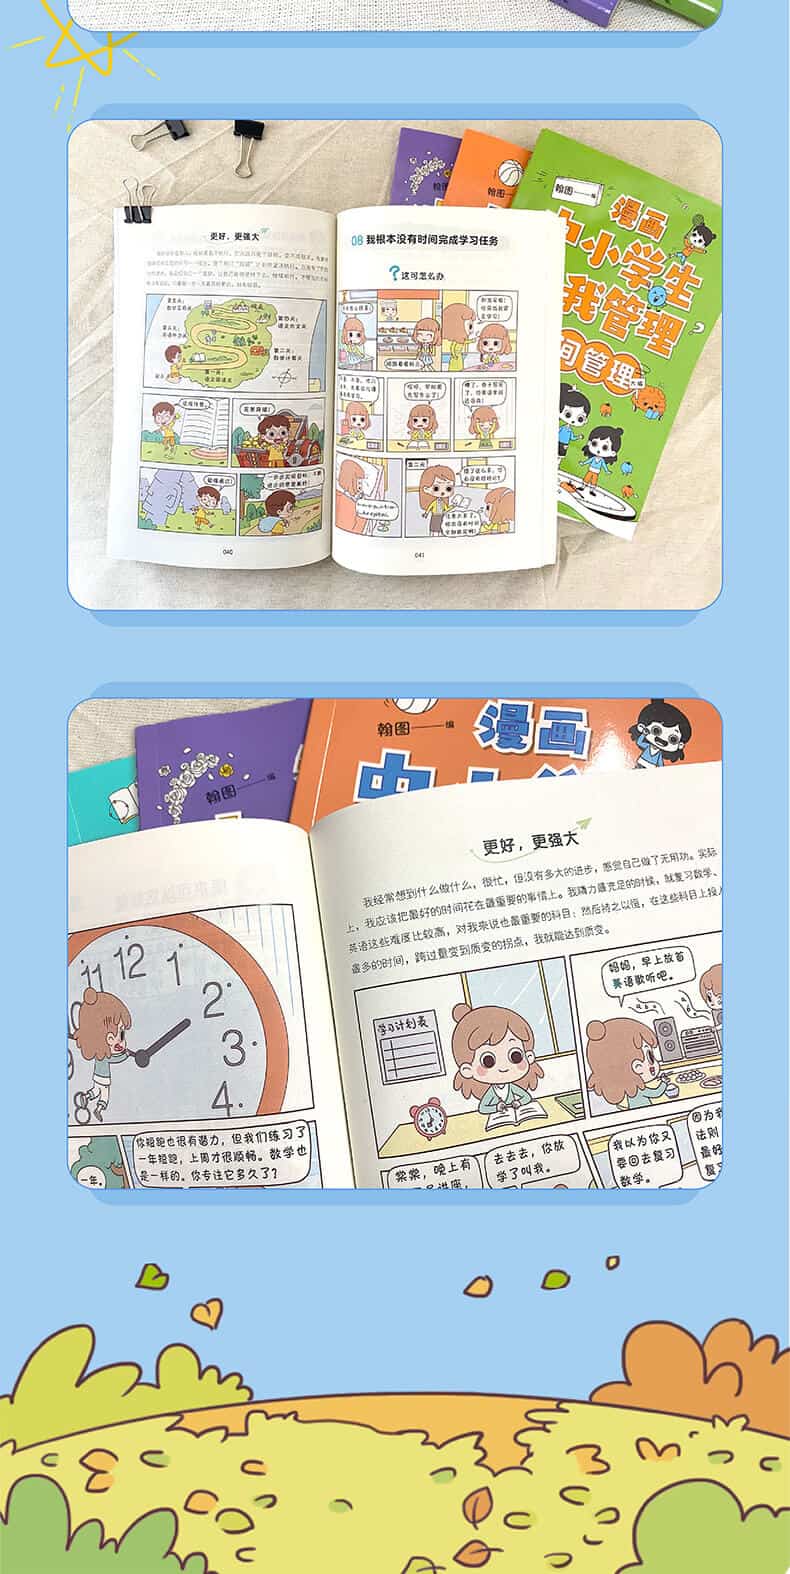 【全套4册】《漫画中小学生自我管理》6 14岁儿童心理健康教育书籍 | 情绪管理与性格培养漫画故事书